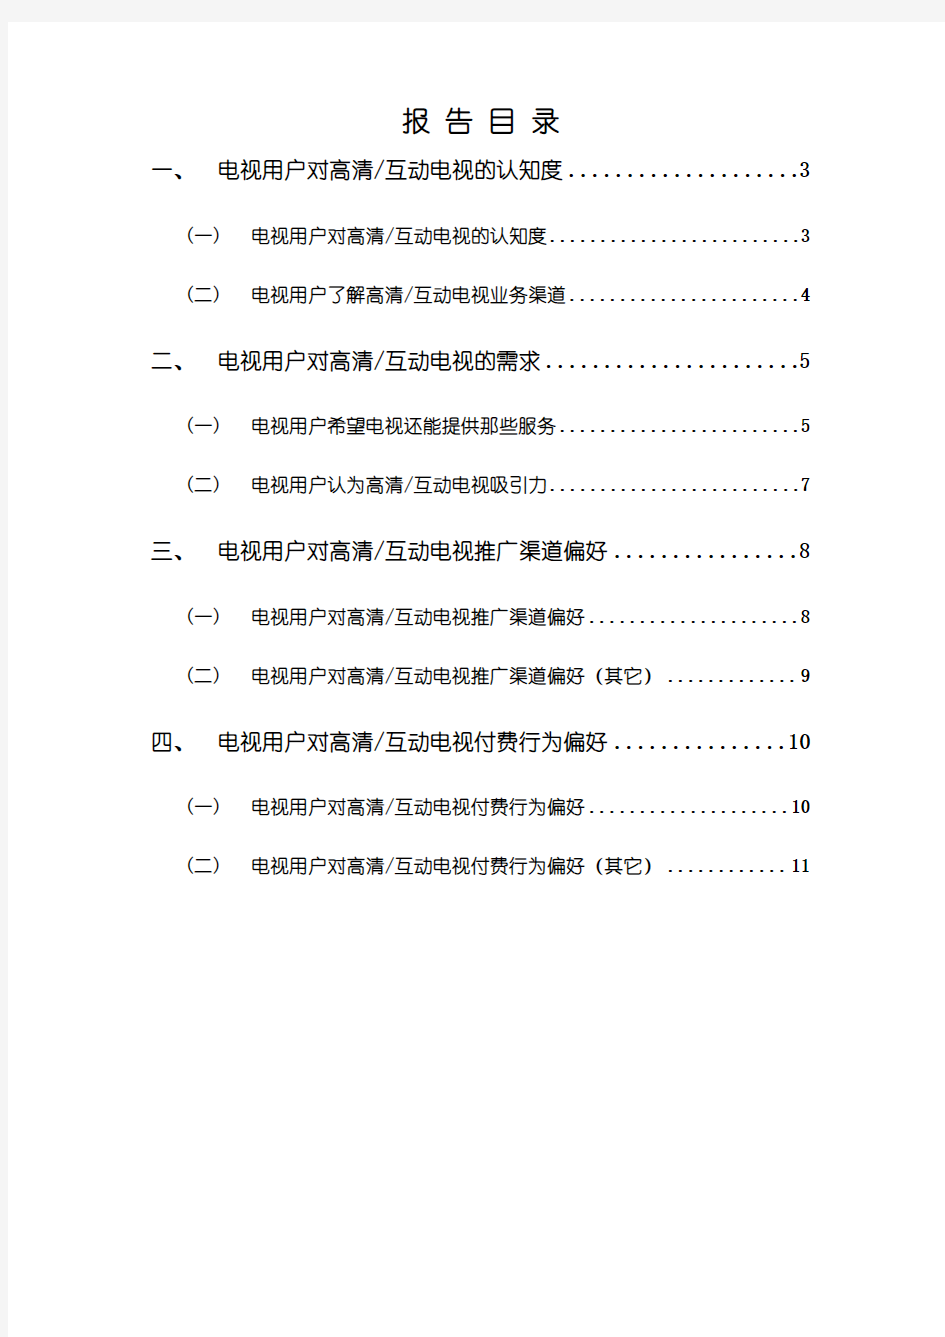 2015年中国广电电视用户高清互动行为及运营研究报告